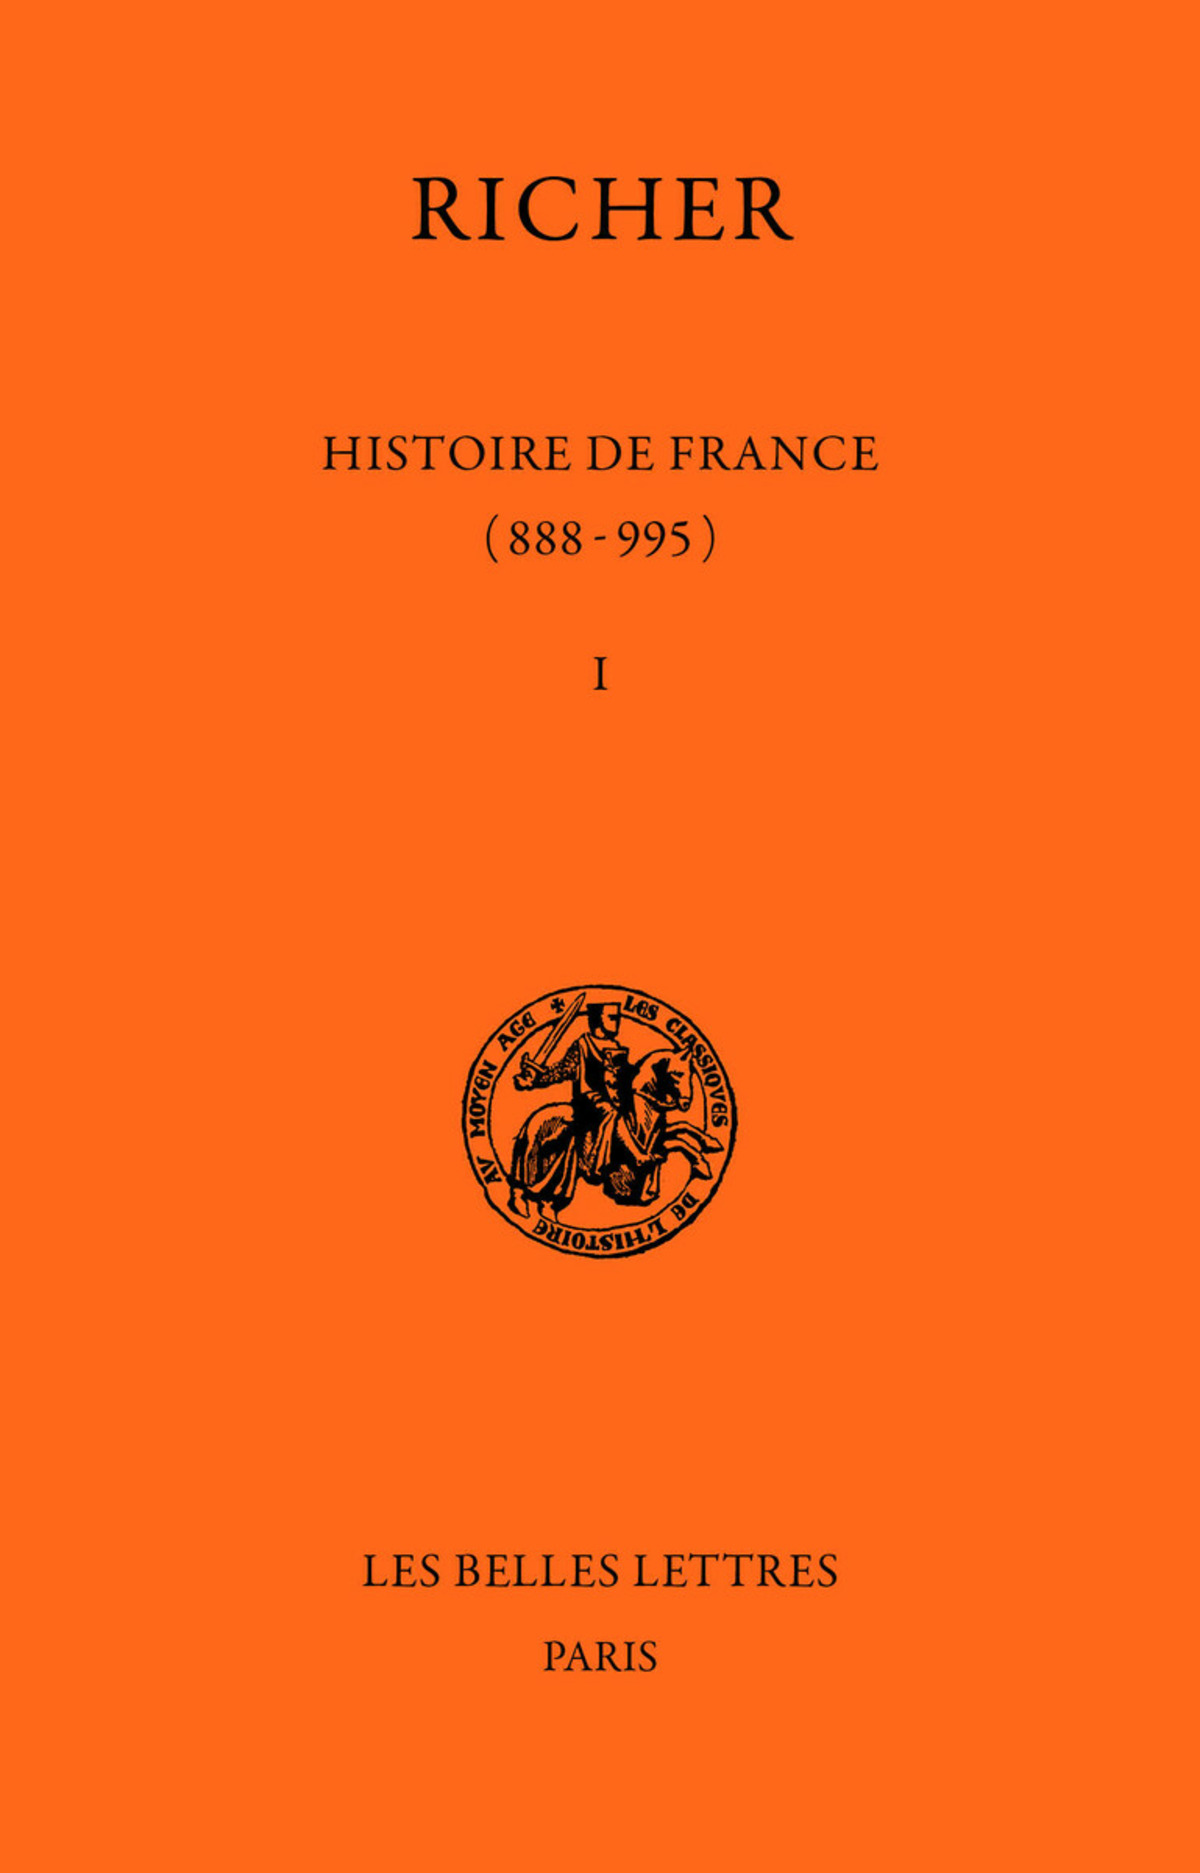 Histoire de France (888-995). Tome I : 888-954